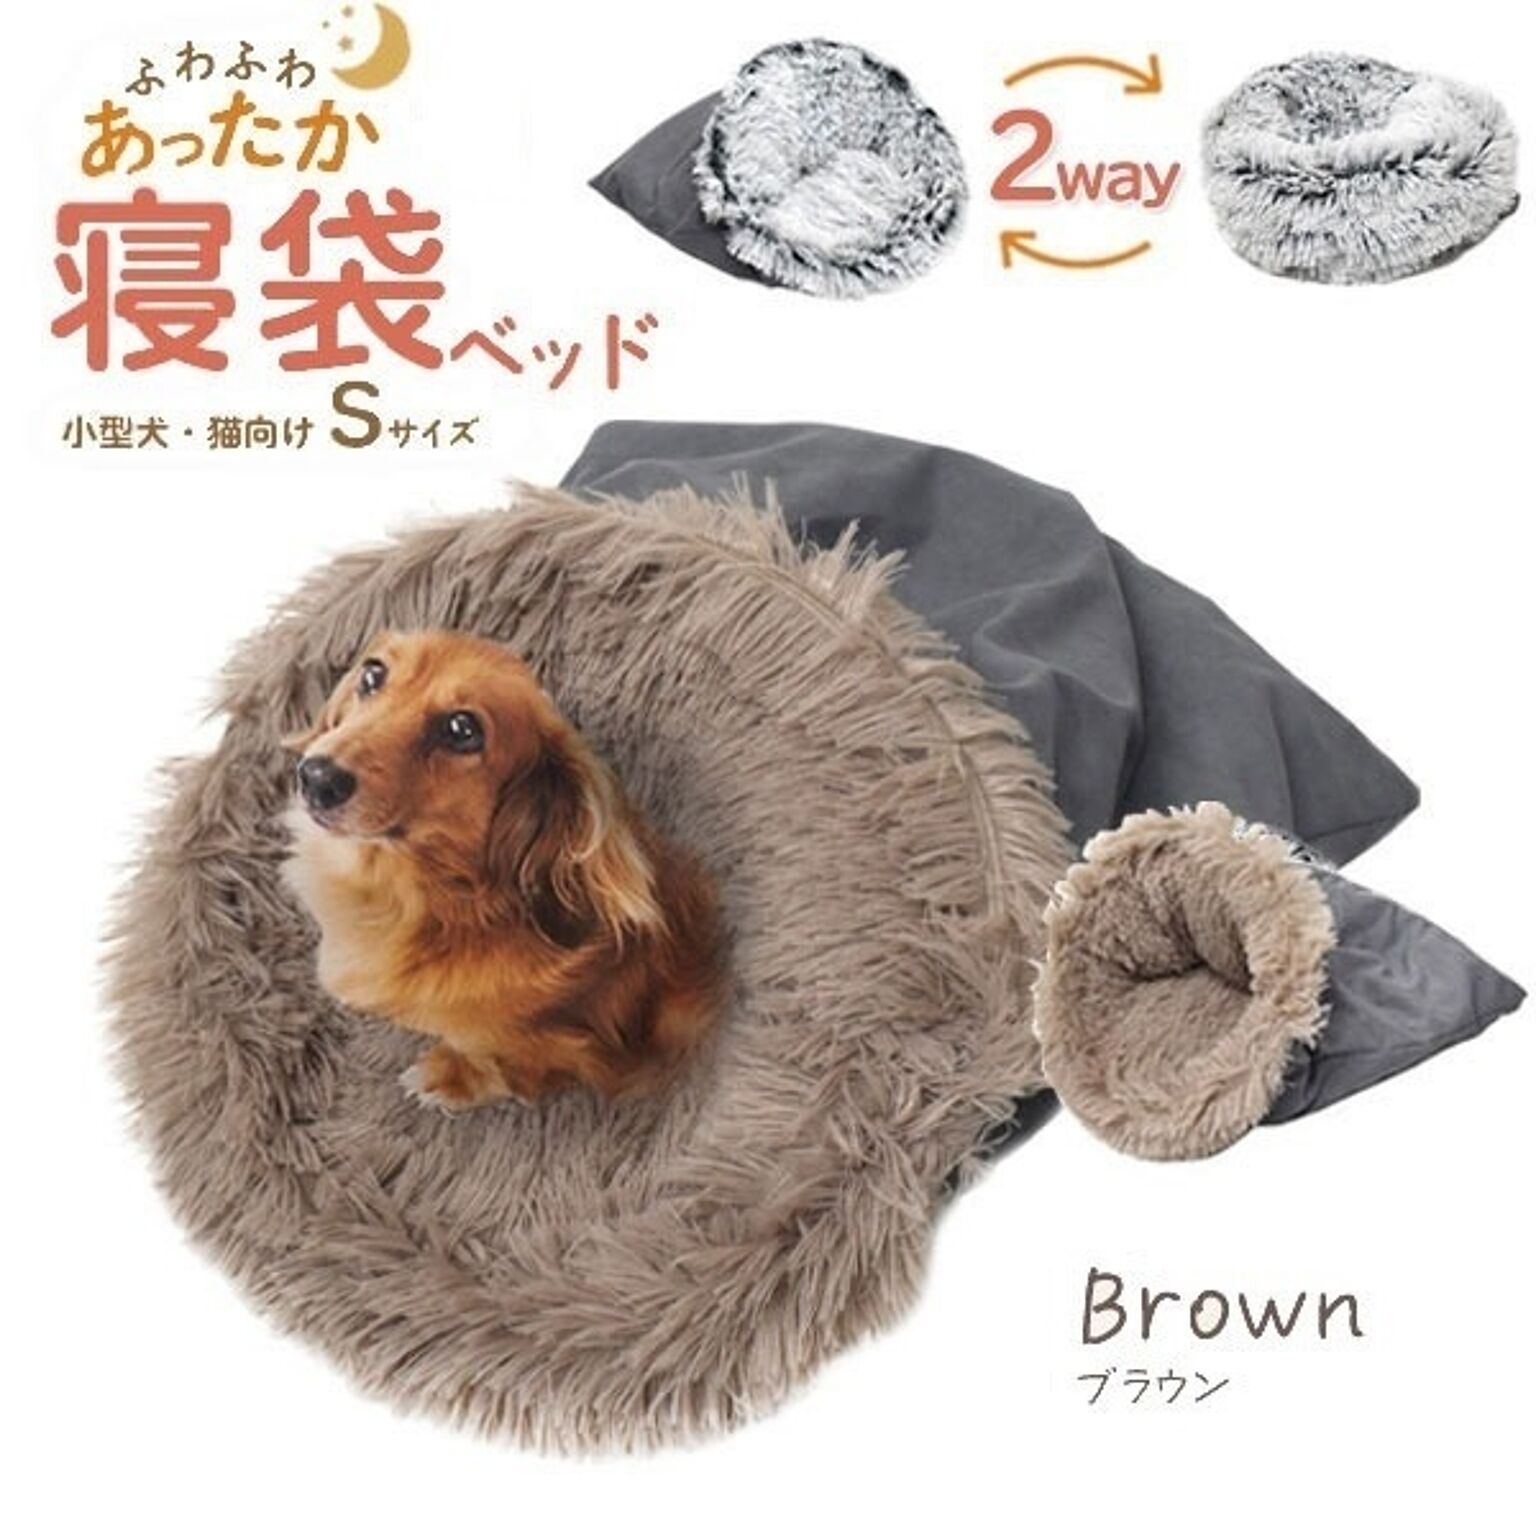 ふわふわあったか！寝袋型 クッションベッド型 2way 小型犬 猫向き 寝袋ベッド Sサイズ（ブラウン）